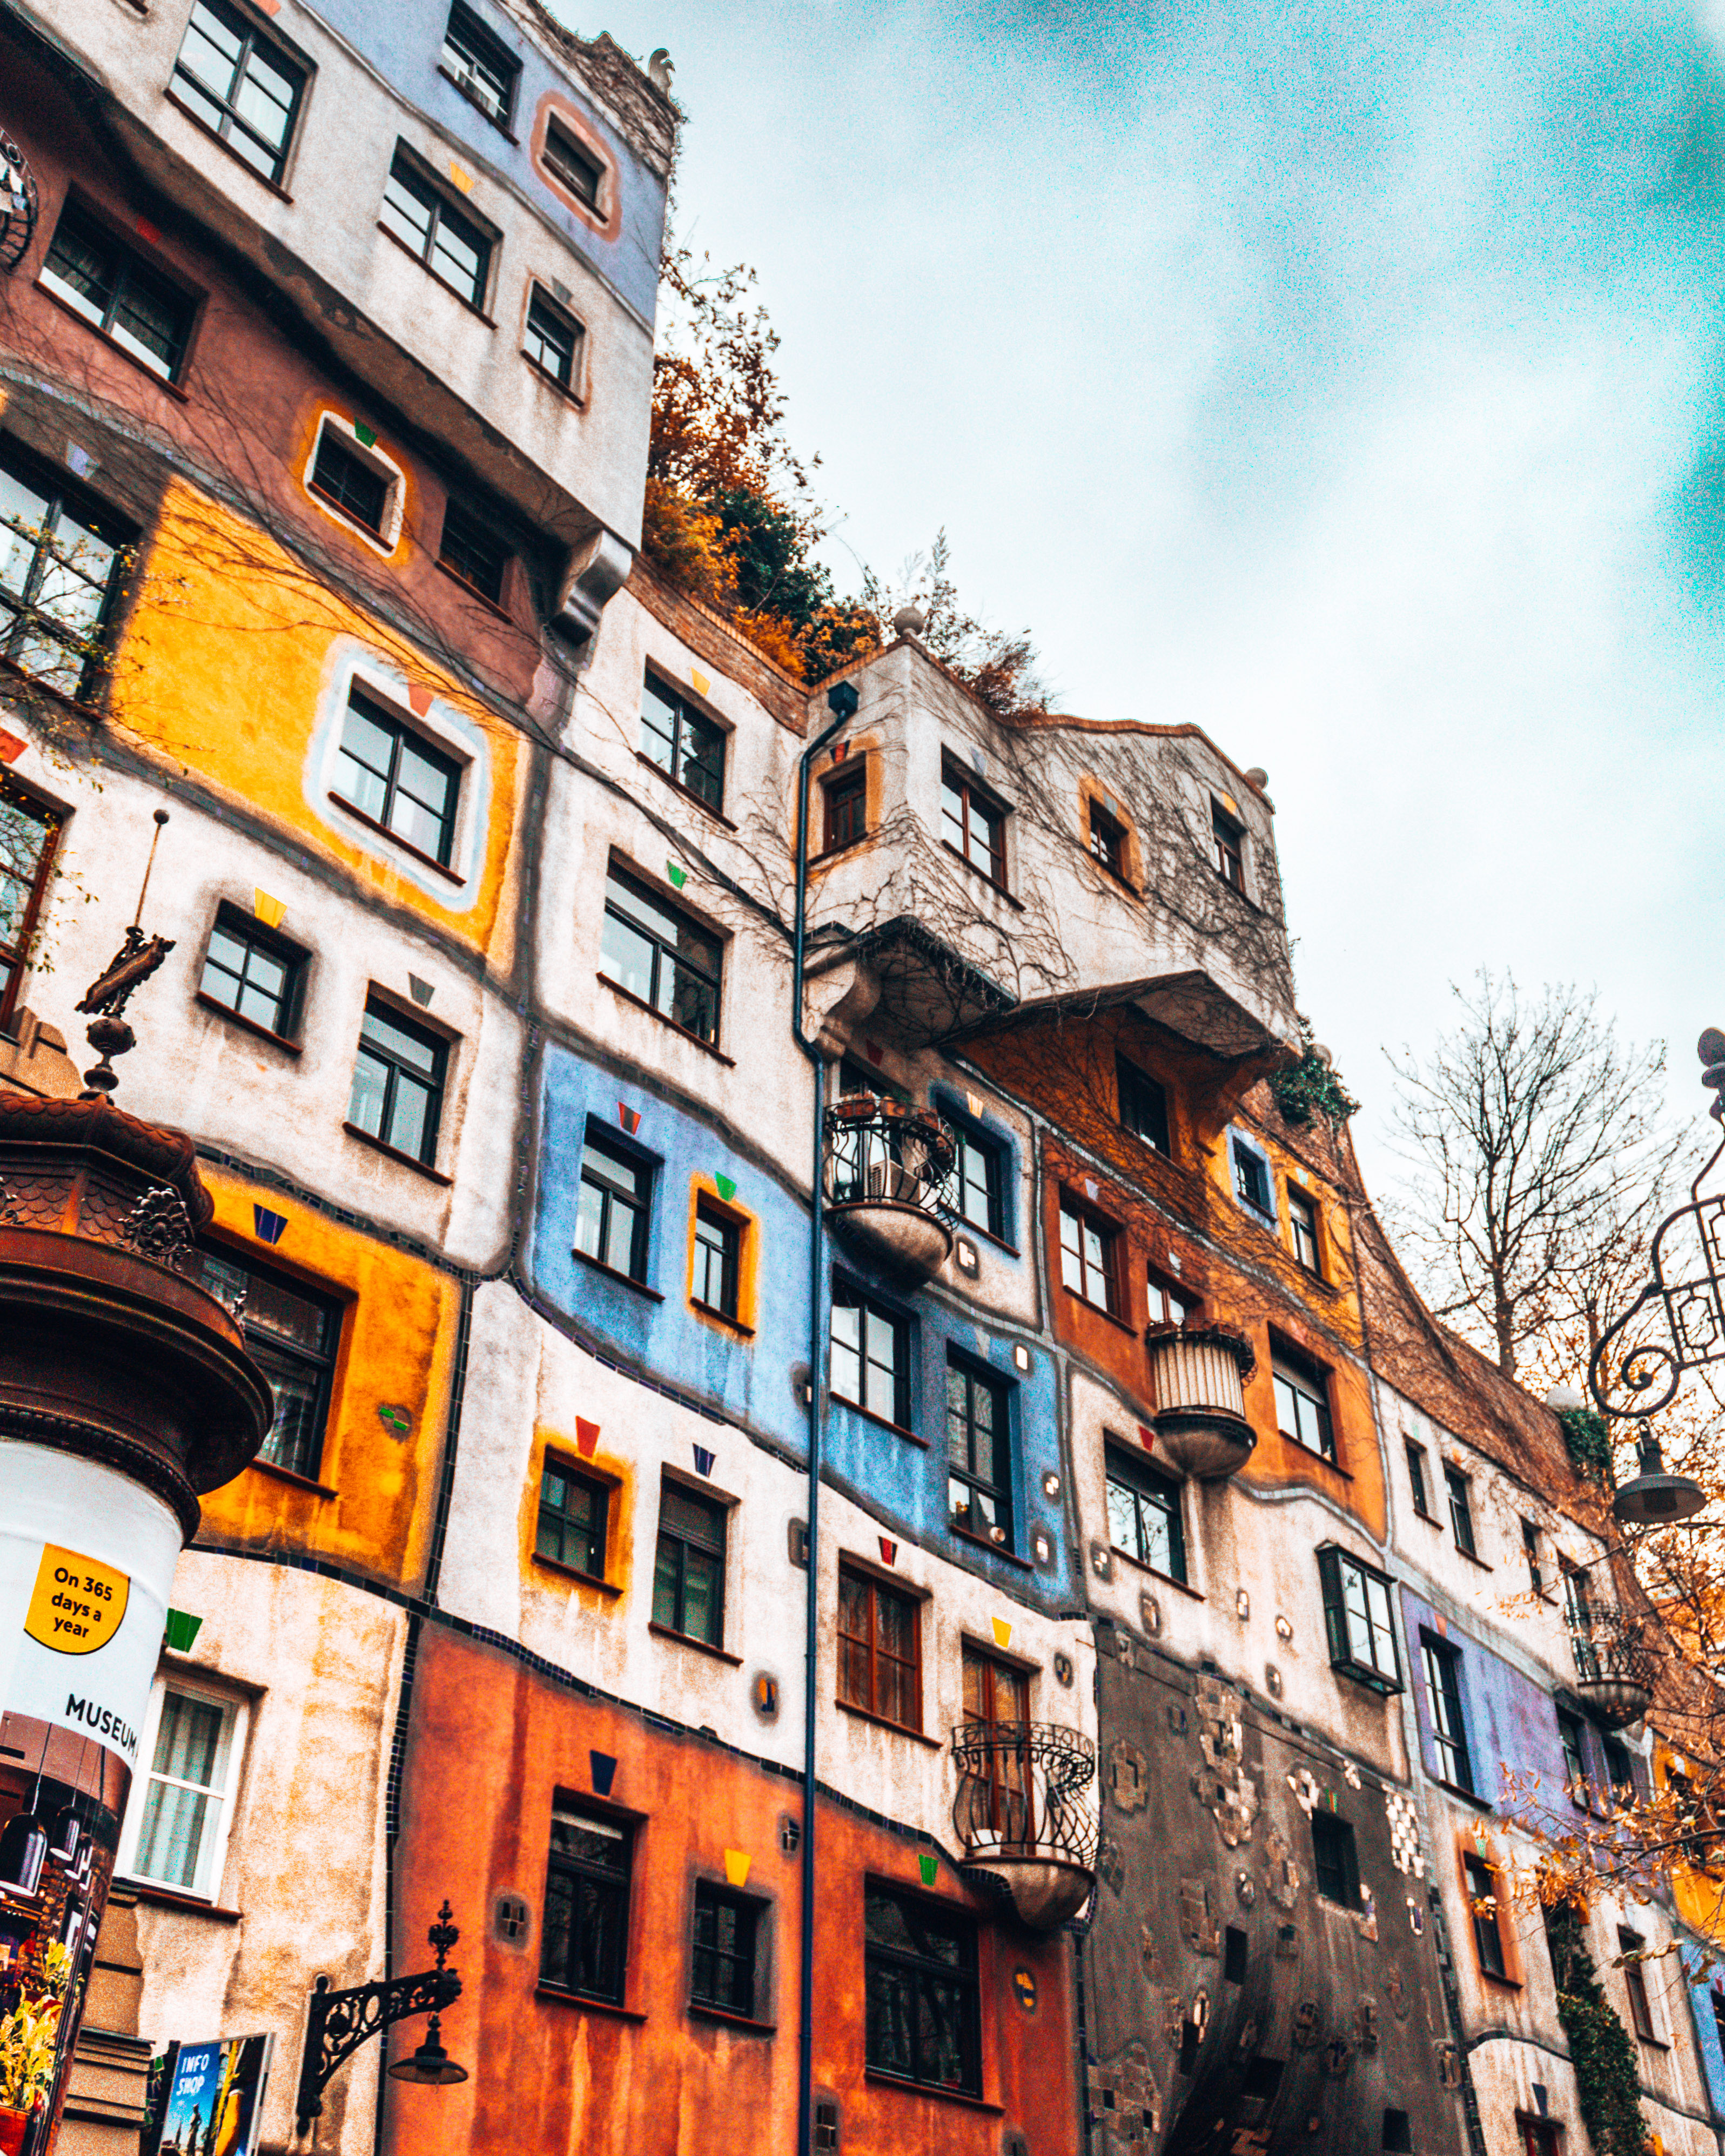 Hundertwasser house 2 days in Vienna